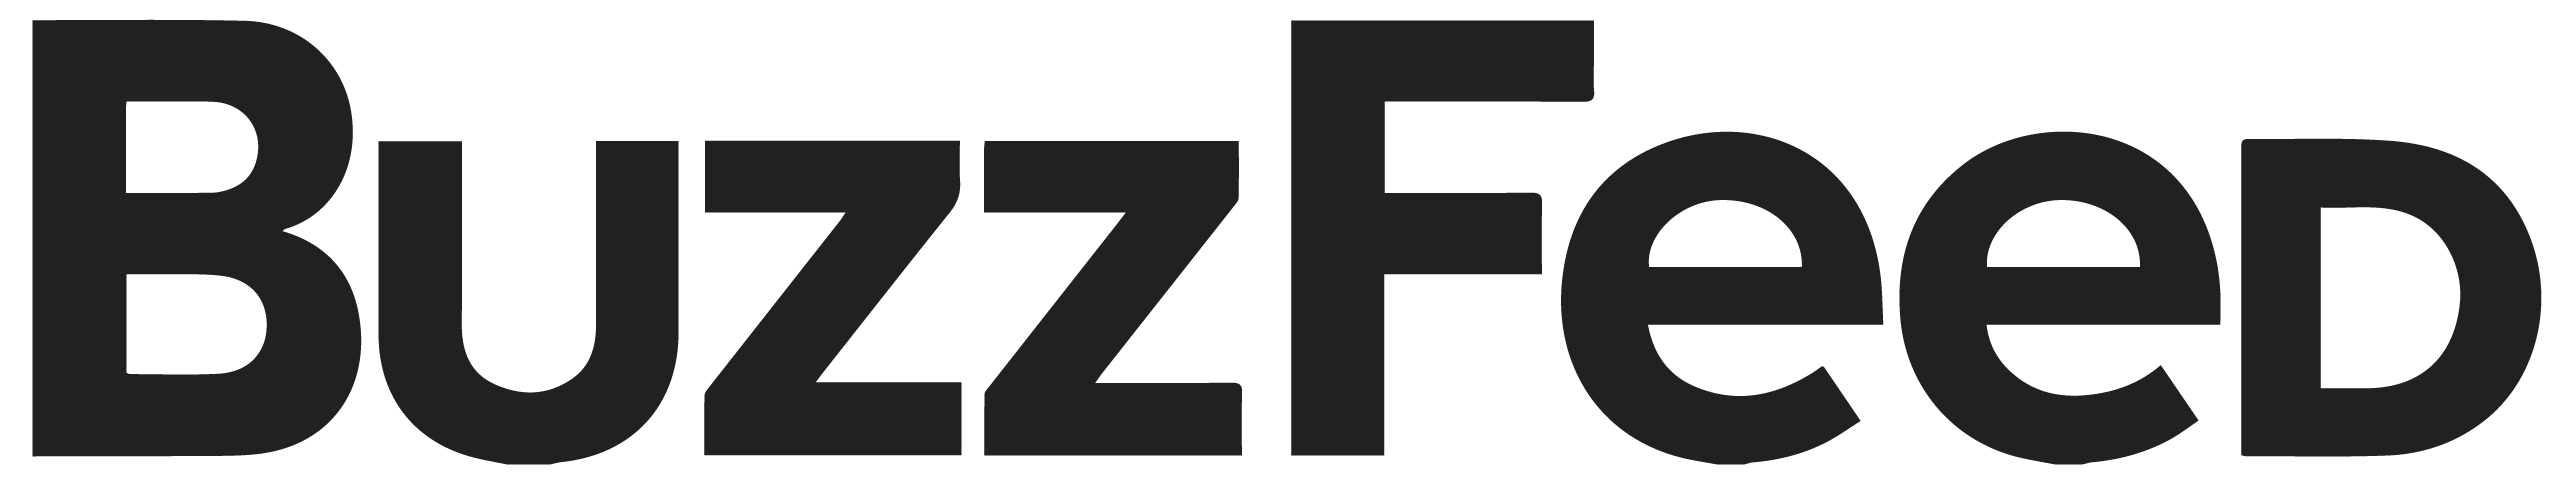 BuzzFeed Logo - buzzfeed-logo - Lola Red PR